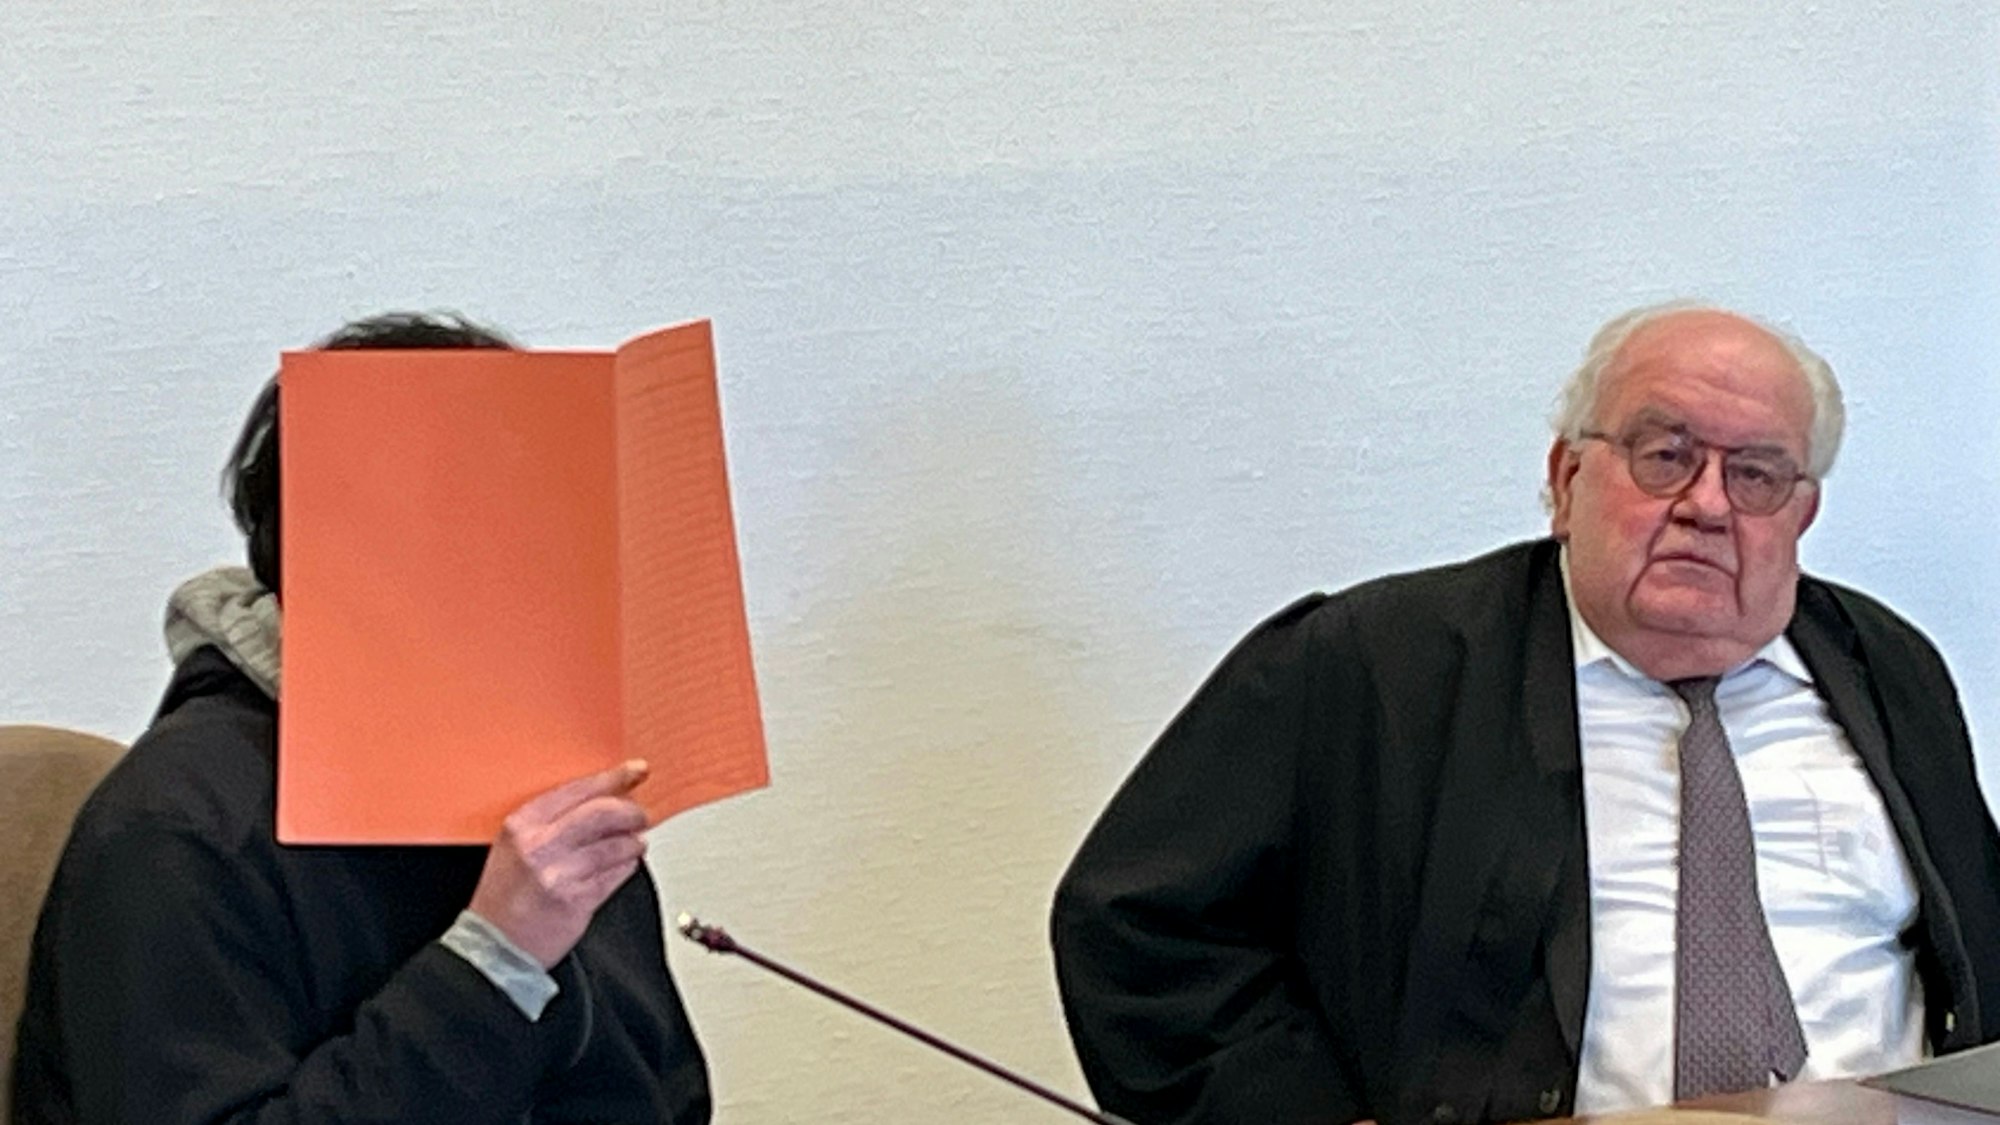 Der des Mordes angeklagte 34 Jahre alte Rheindorfer sitzt, hinter einem Aktendeckel versteckt, neben seinem Anwalt Gottfried Reims.